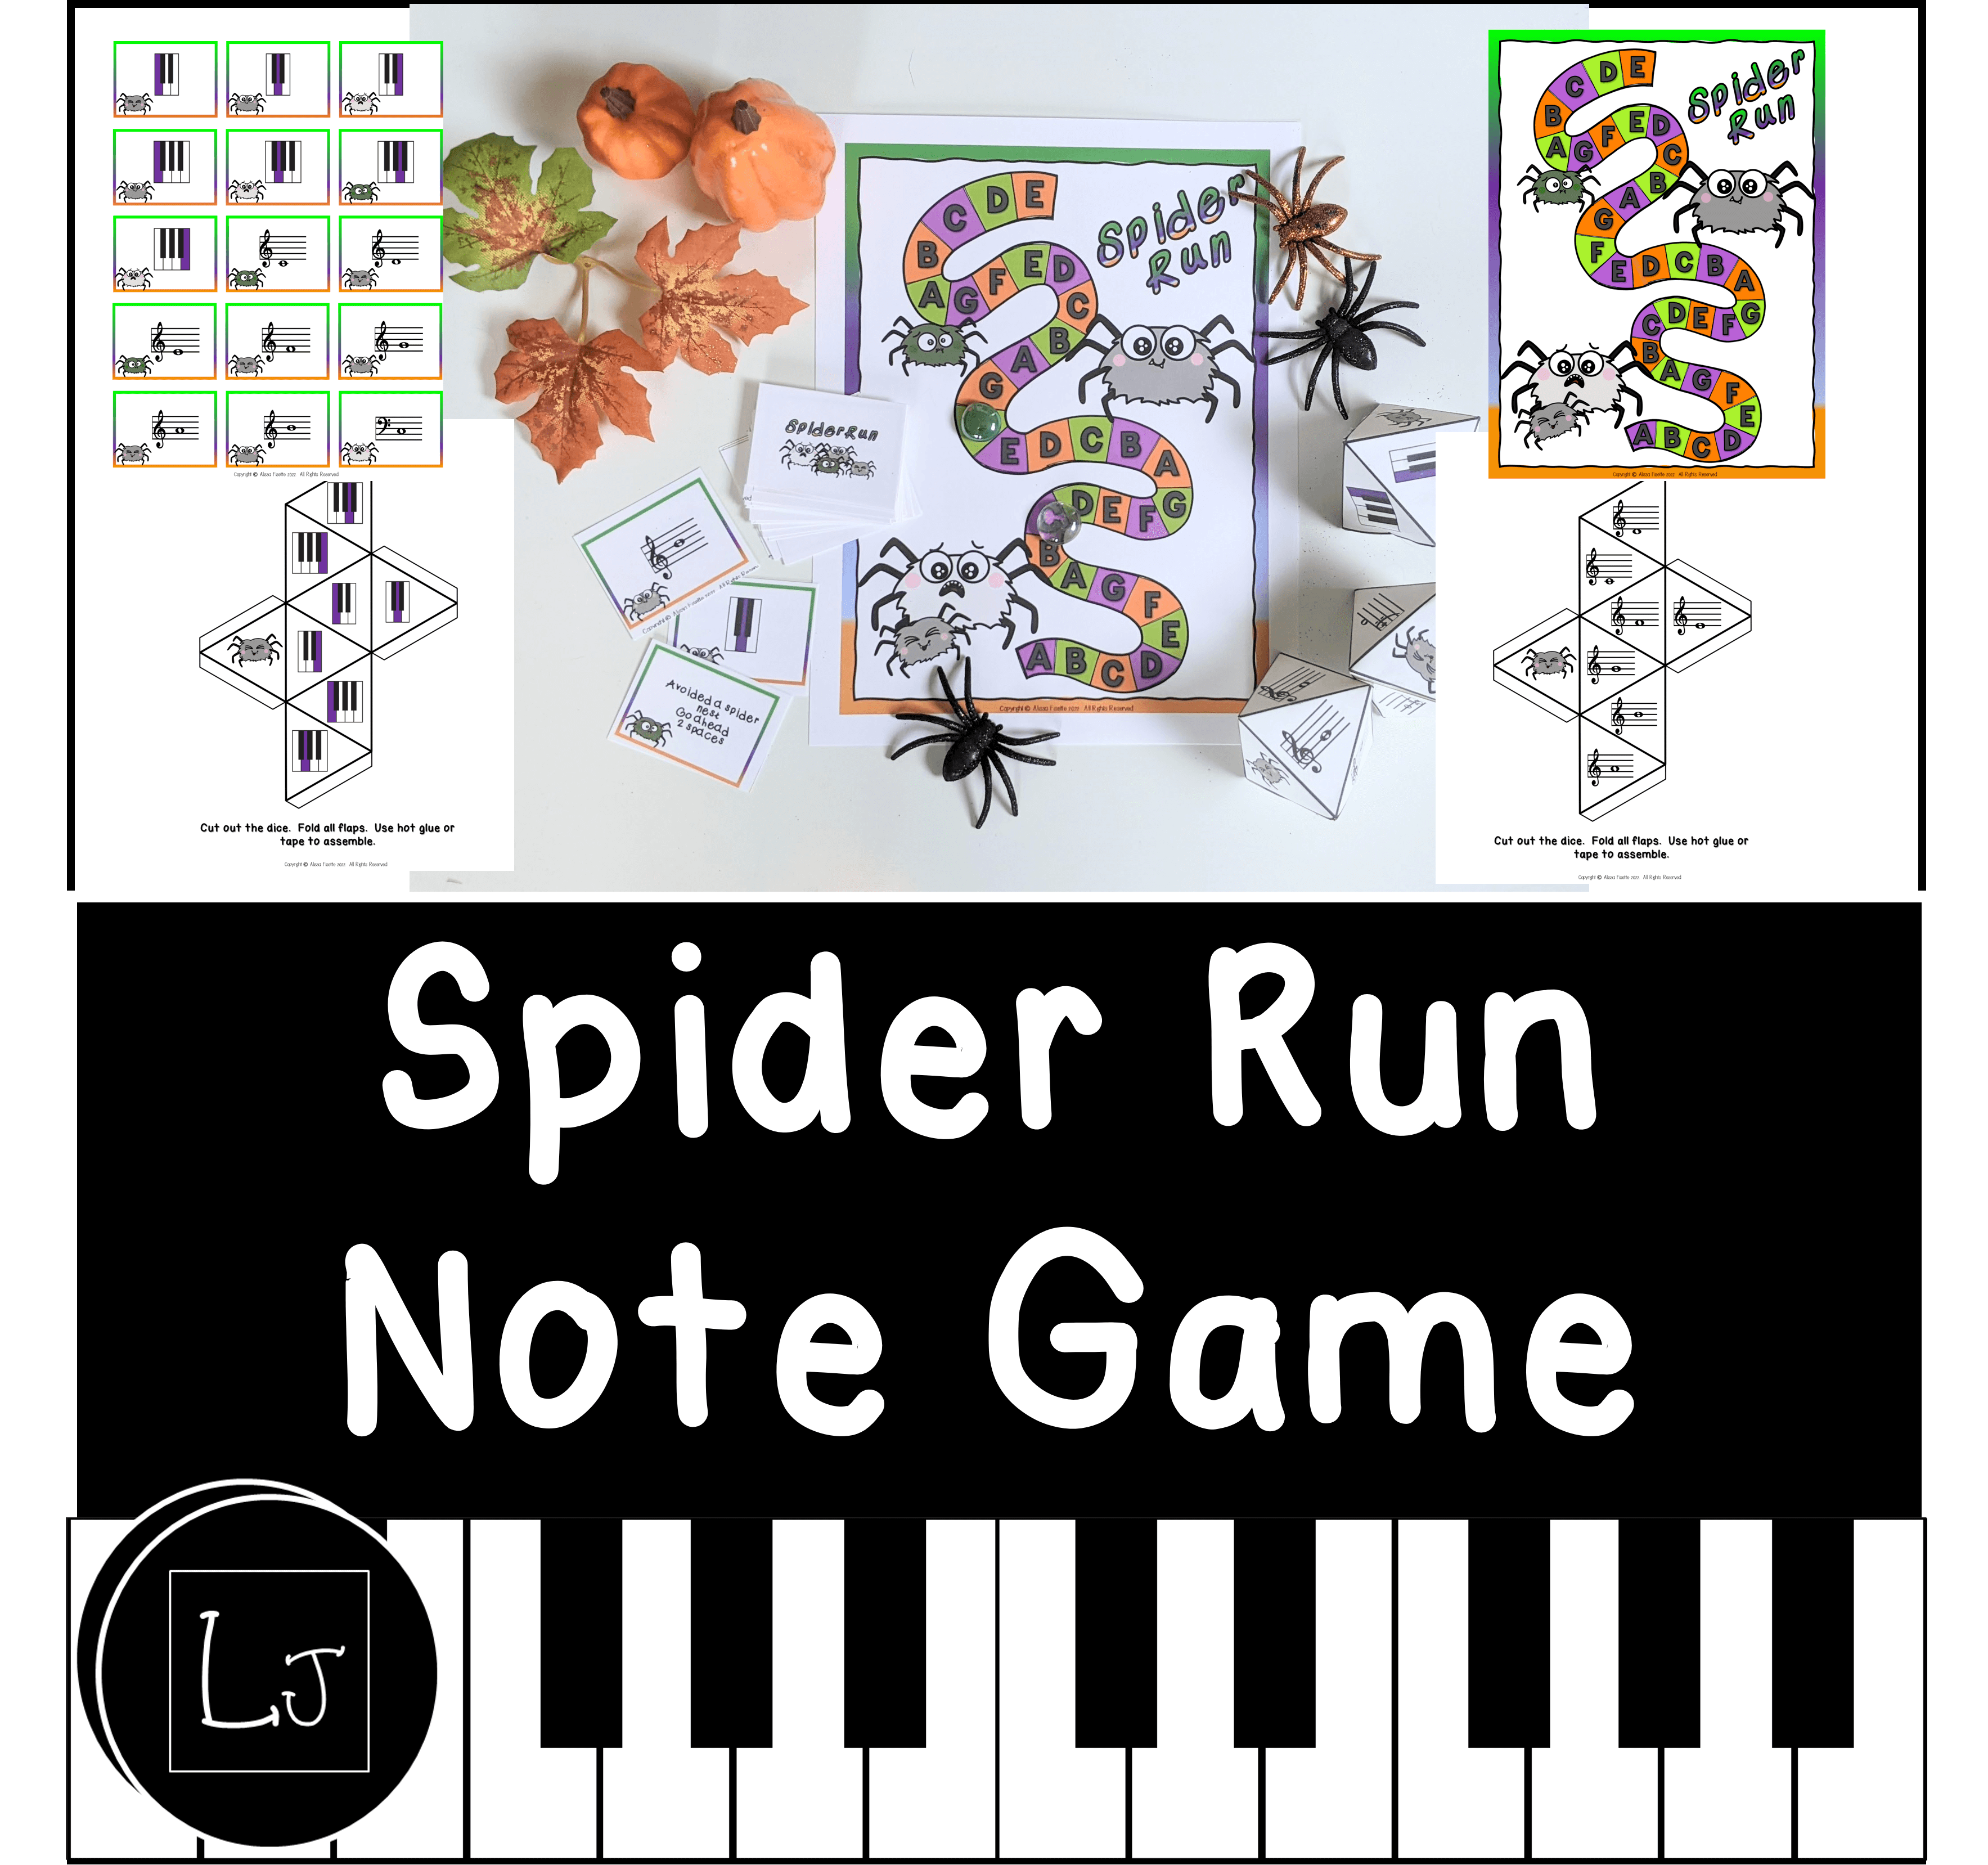 Spider run note game